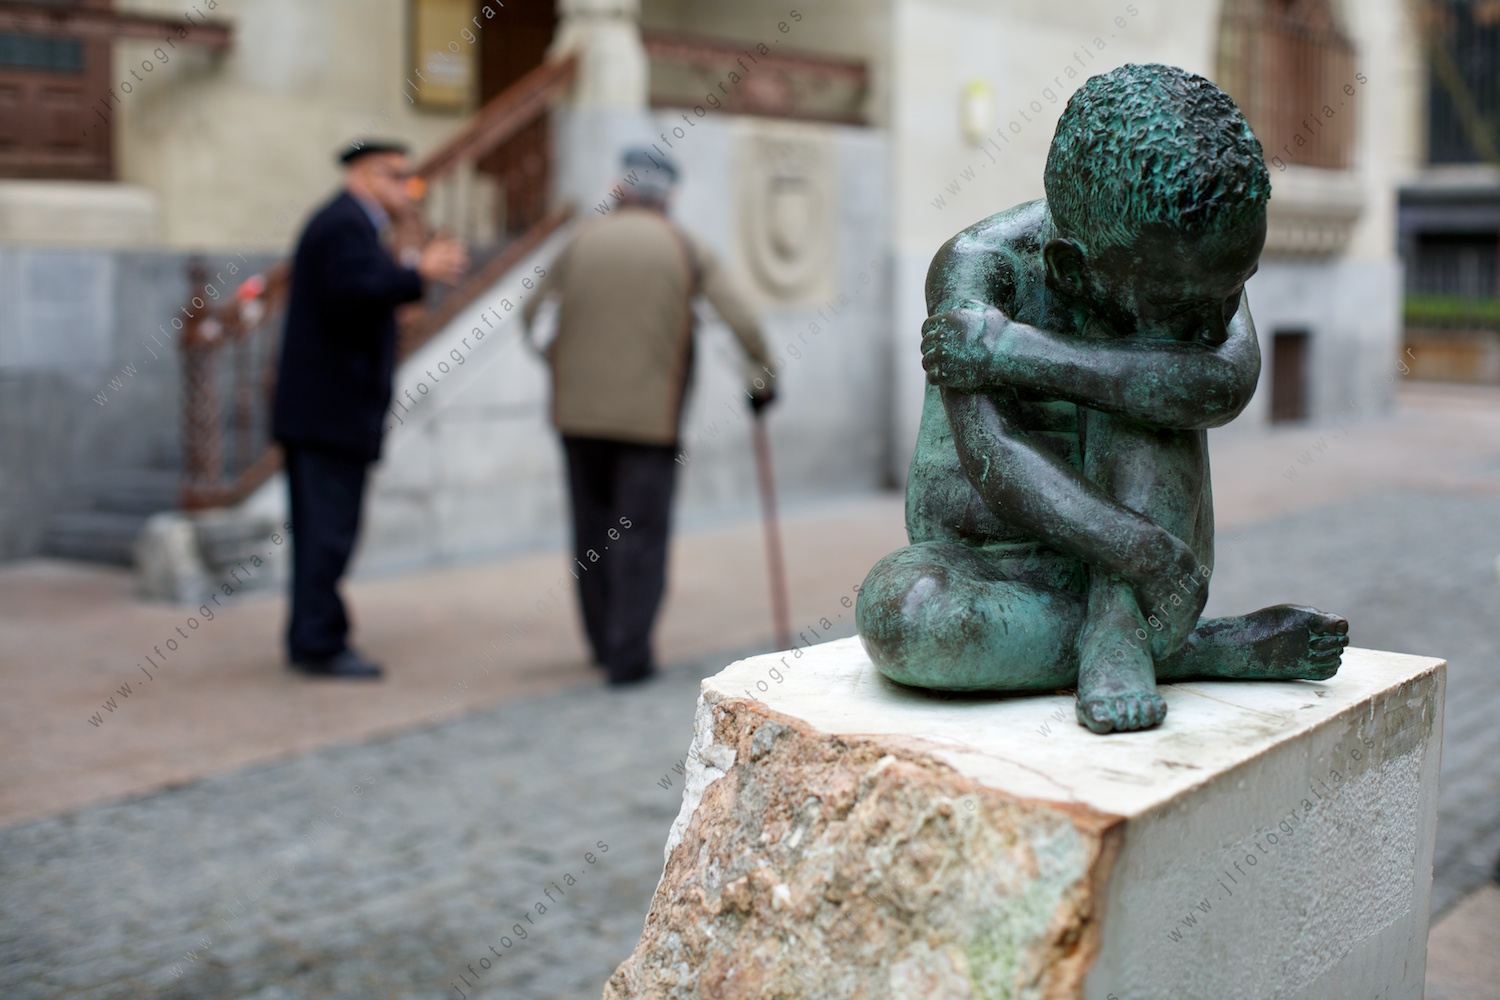 escultura del niño pensador: Iqbal Masih en la plaza de correos de Vitoria